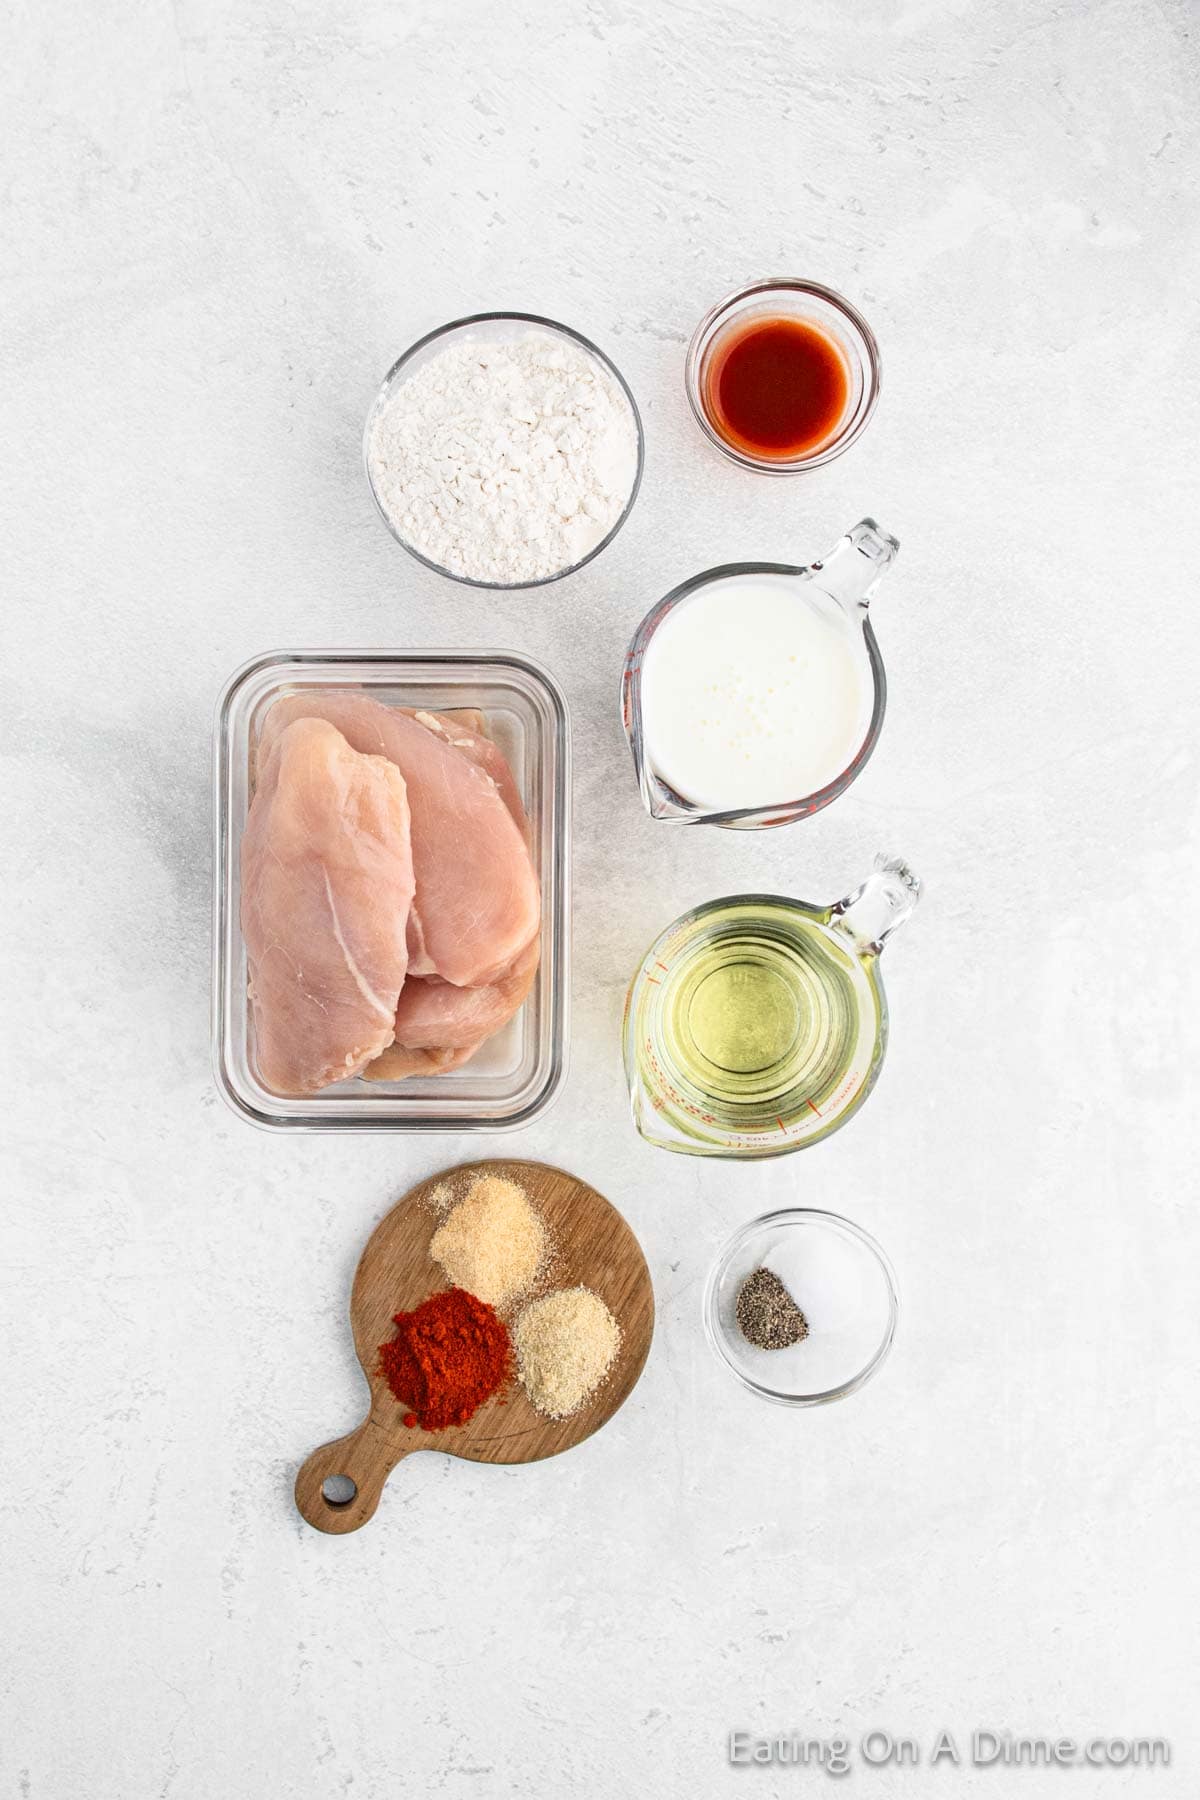 Ingredients - Chicken breast, flour, hot sauce, buttermilk, oil, paprika, garlic powder, onion powder, salt pepper